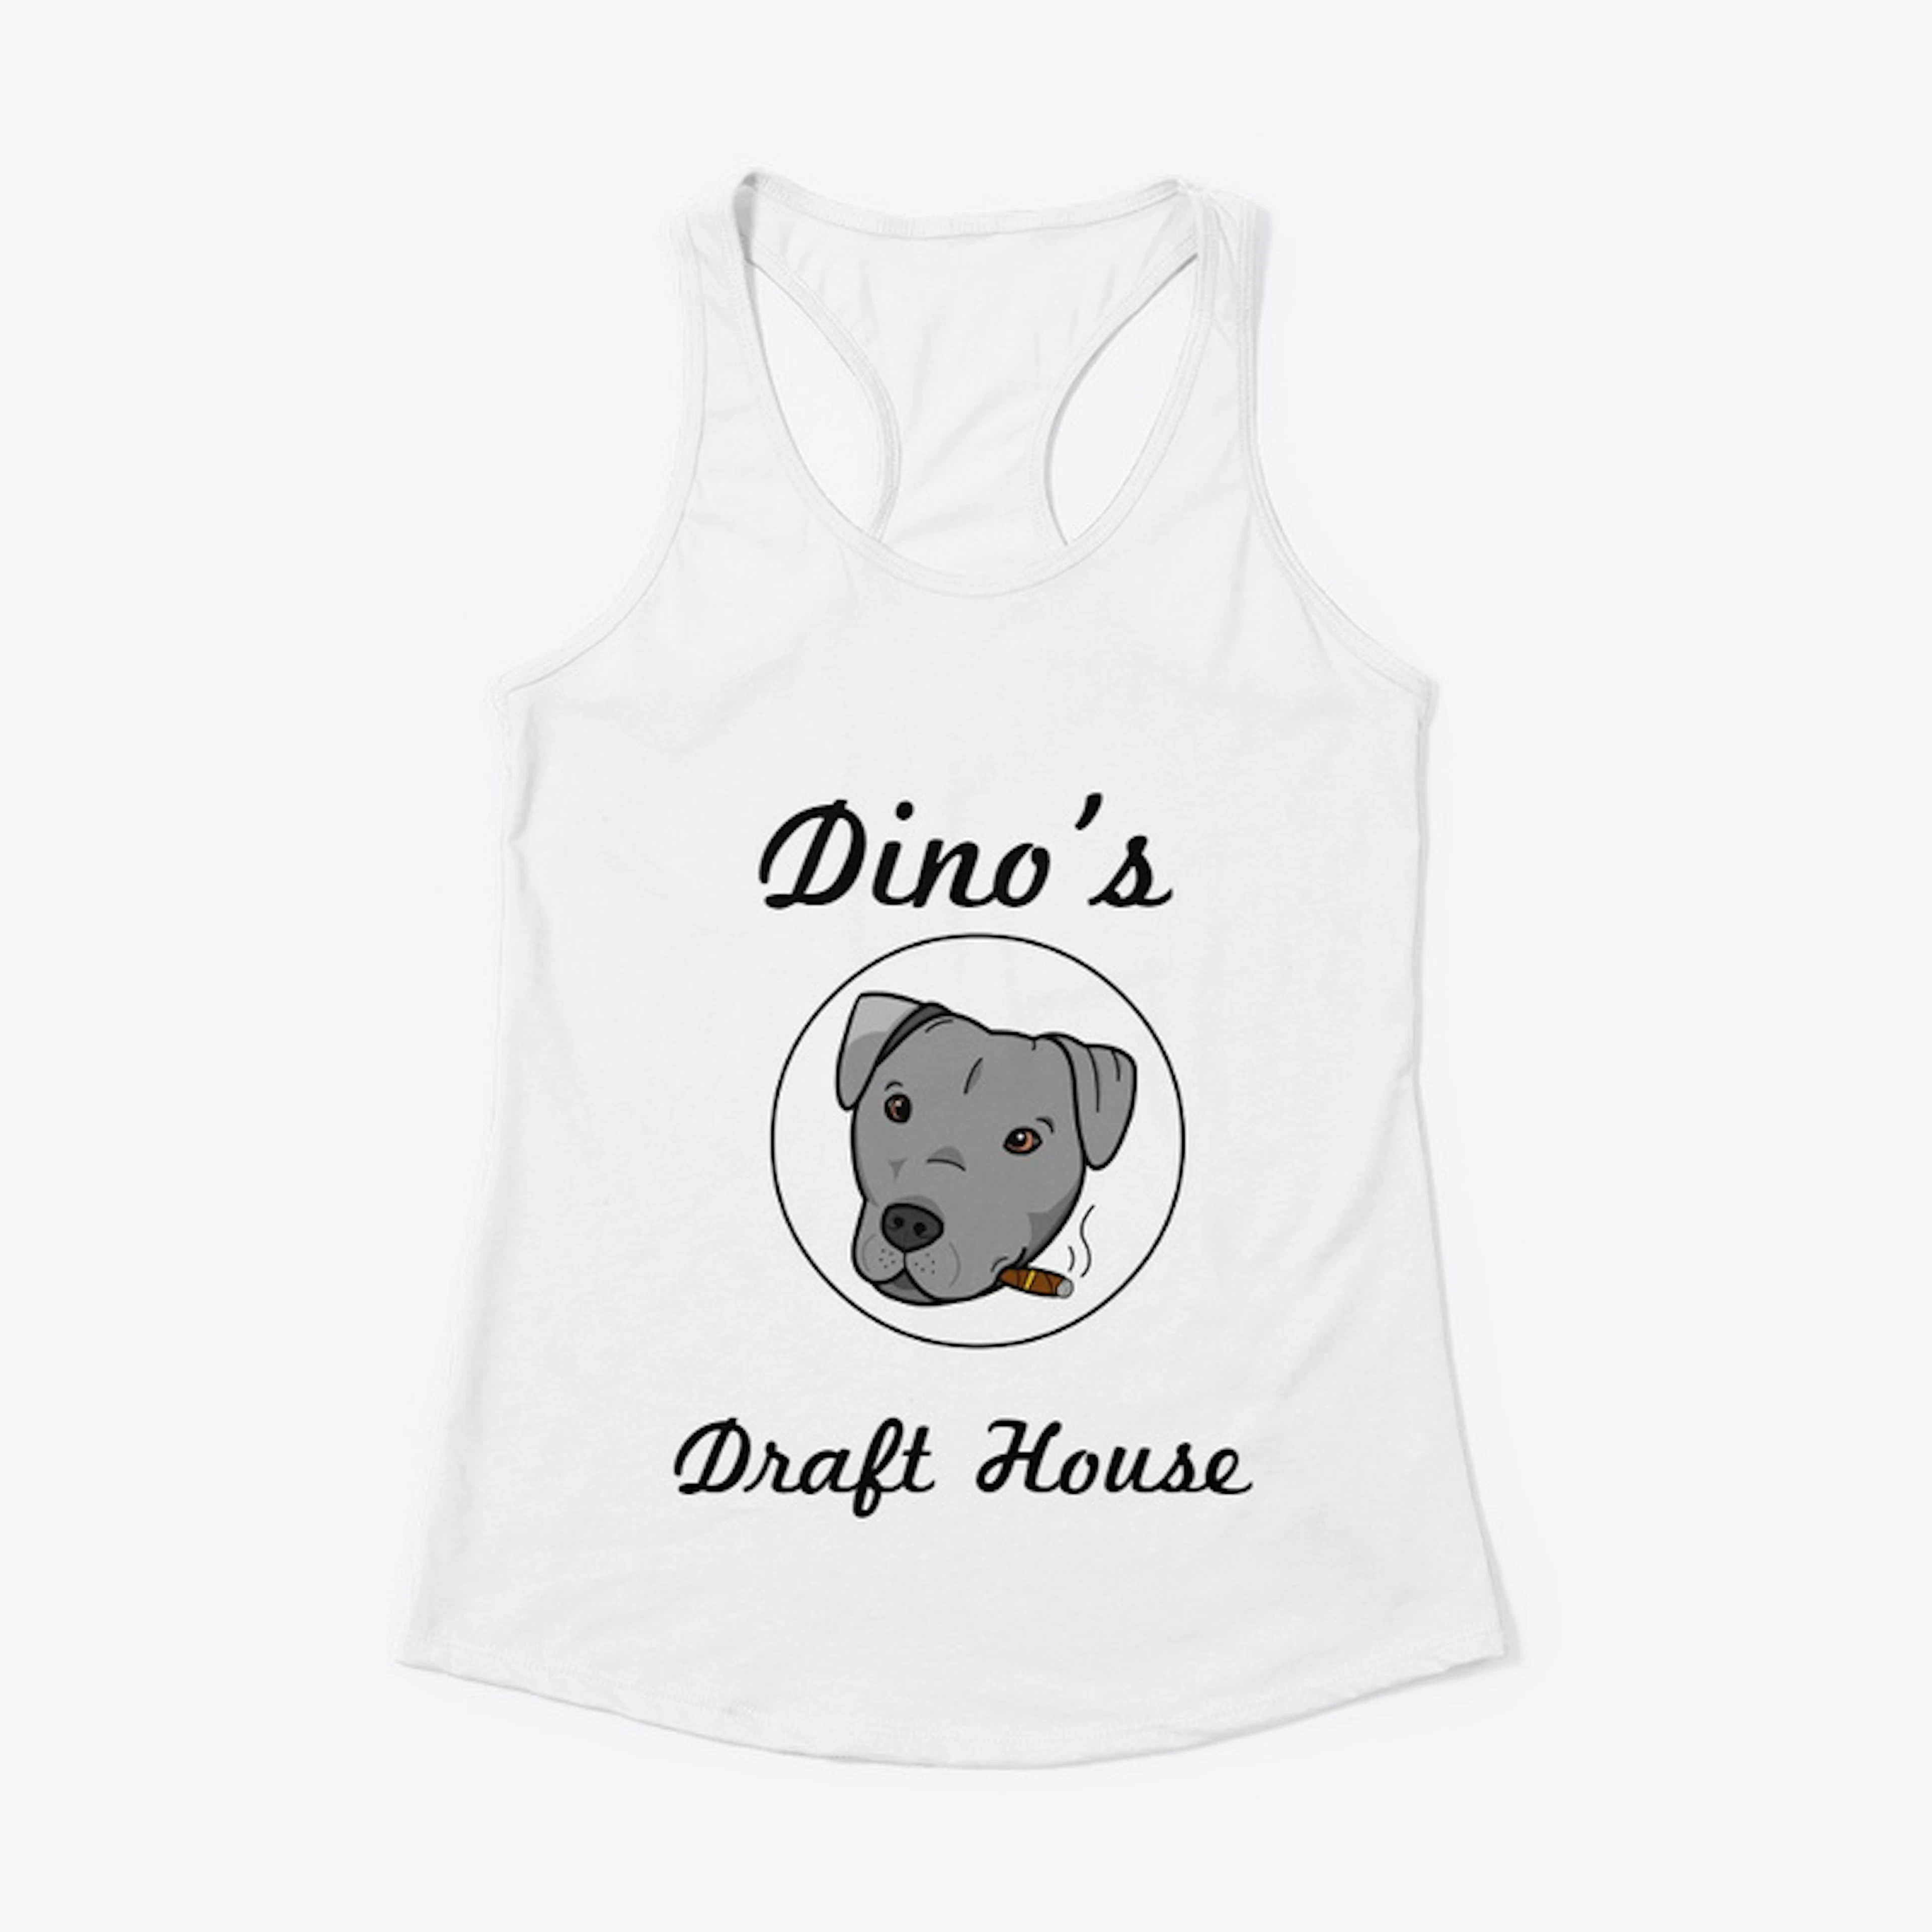 Dino's Draft House